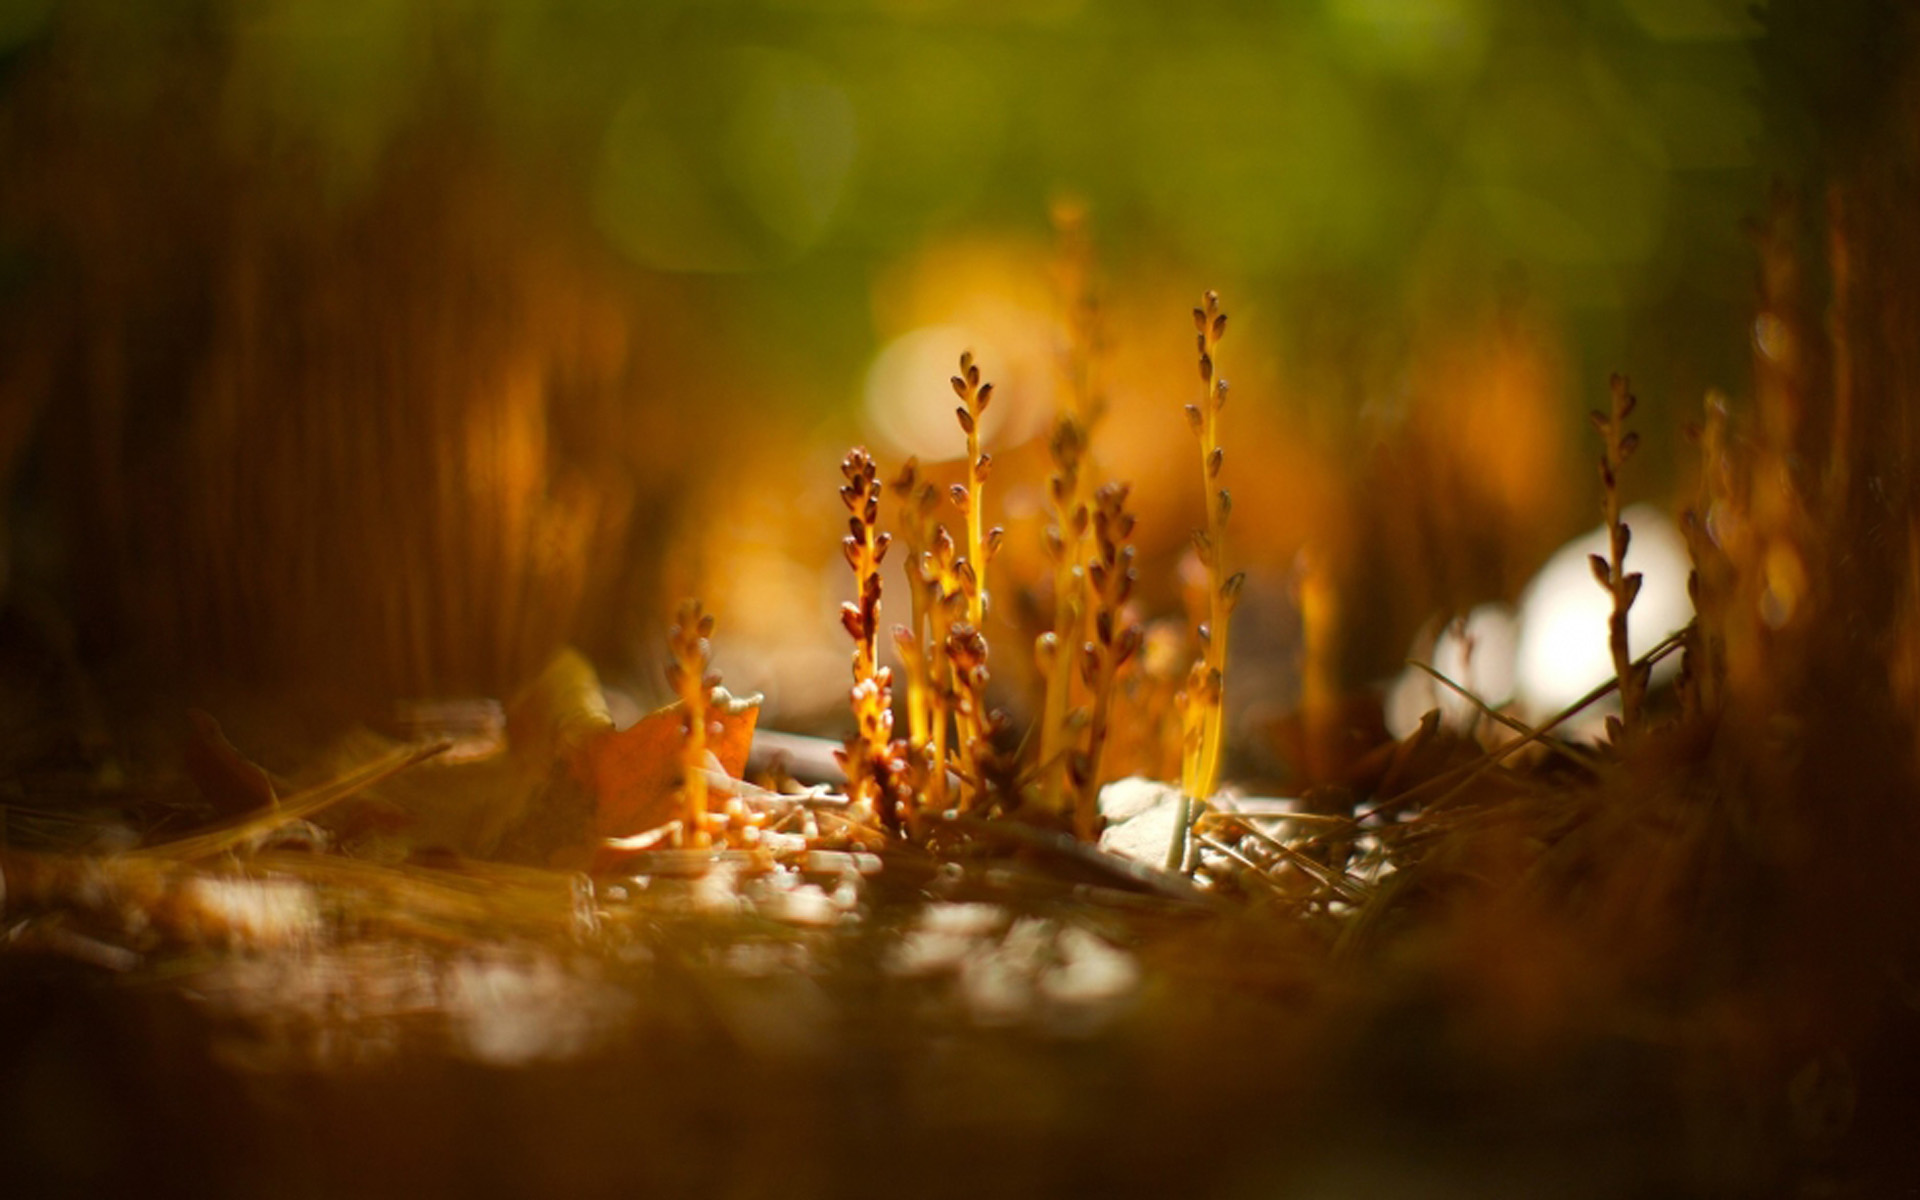 静物唯美意境图片 小清新植物创意光影摄影图片(3)